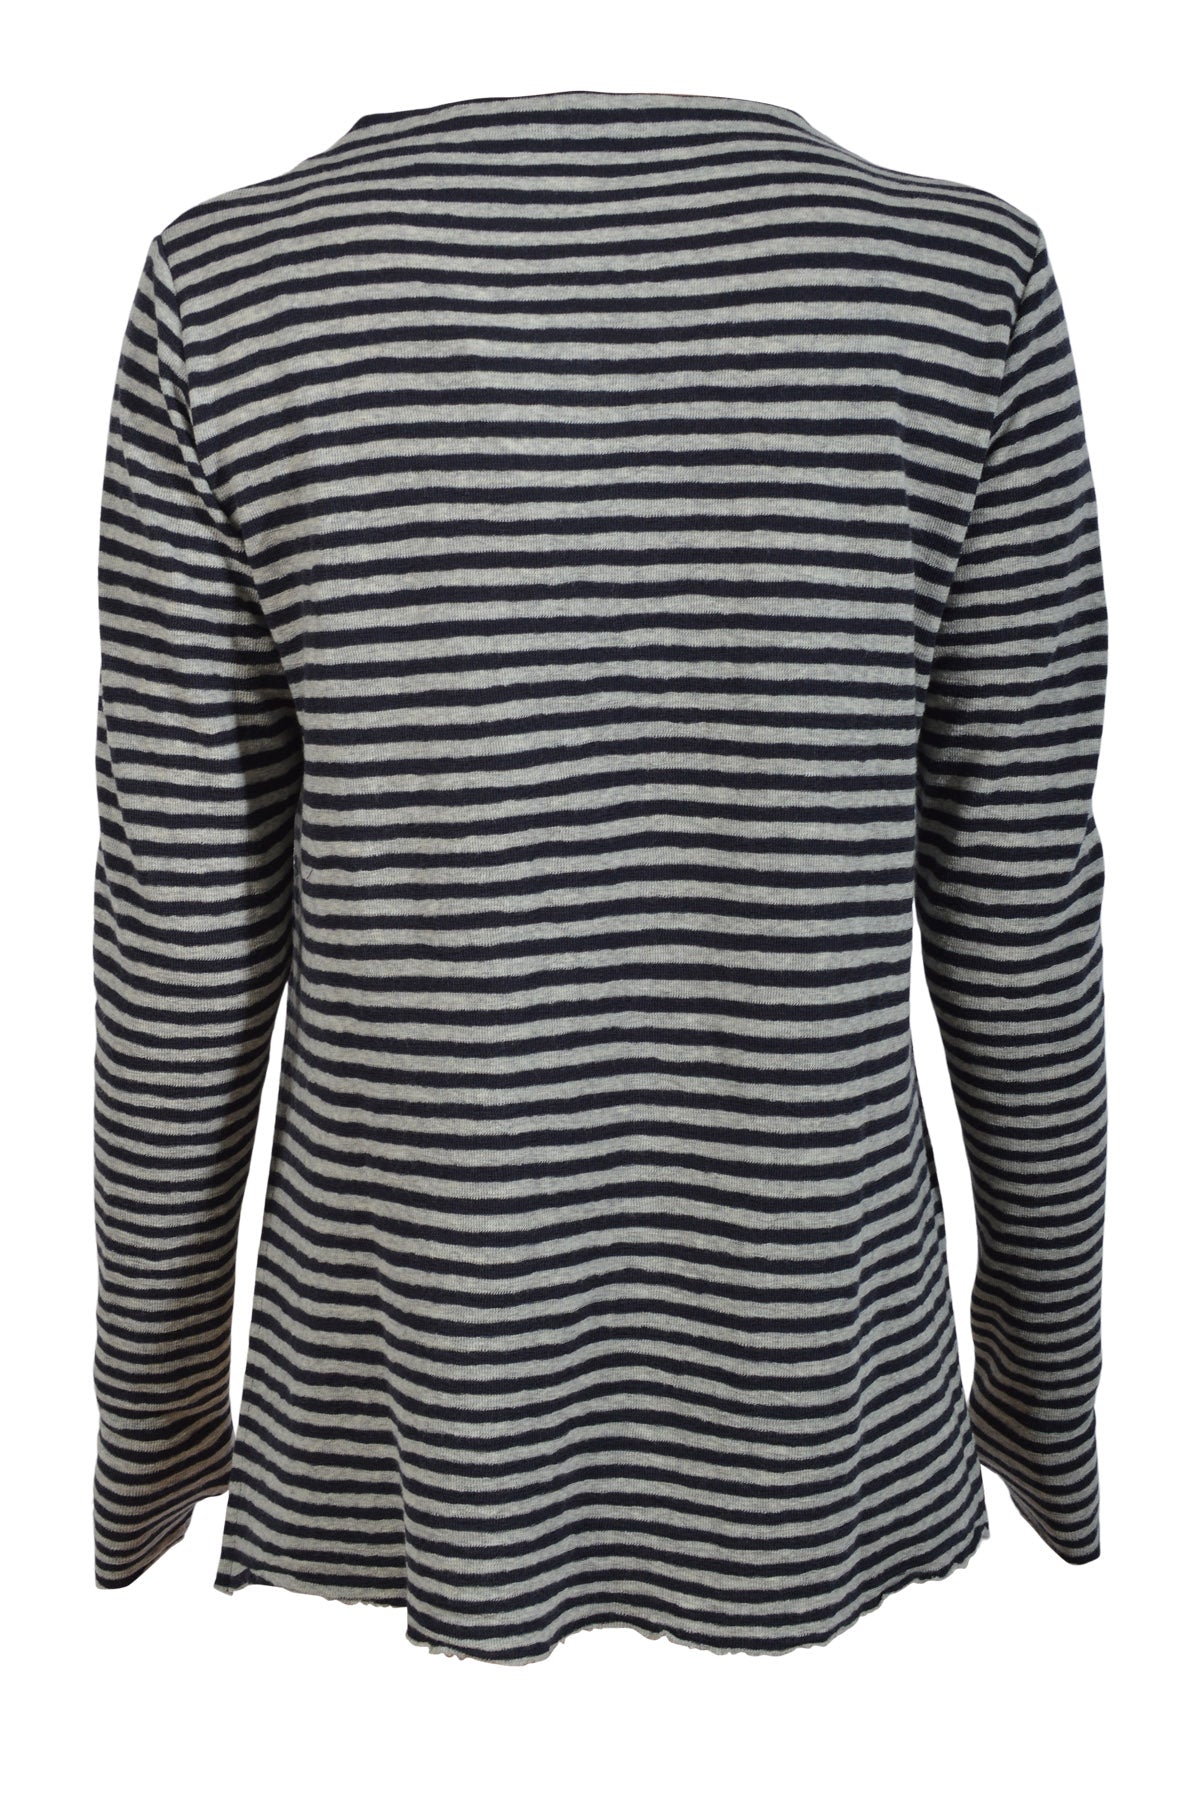 Blusbar by basic 4040 Shirt L/S w/high neck & slits, Charcoal/dawn grey melange